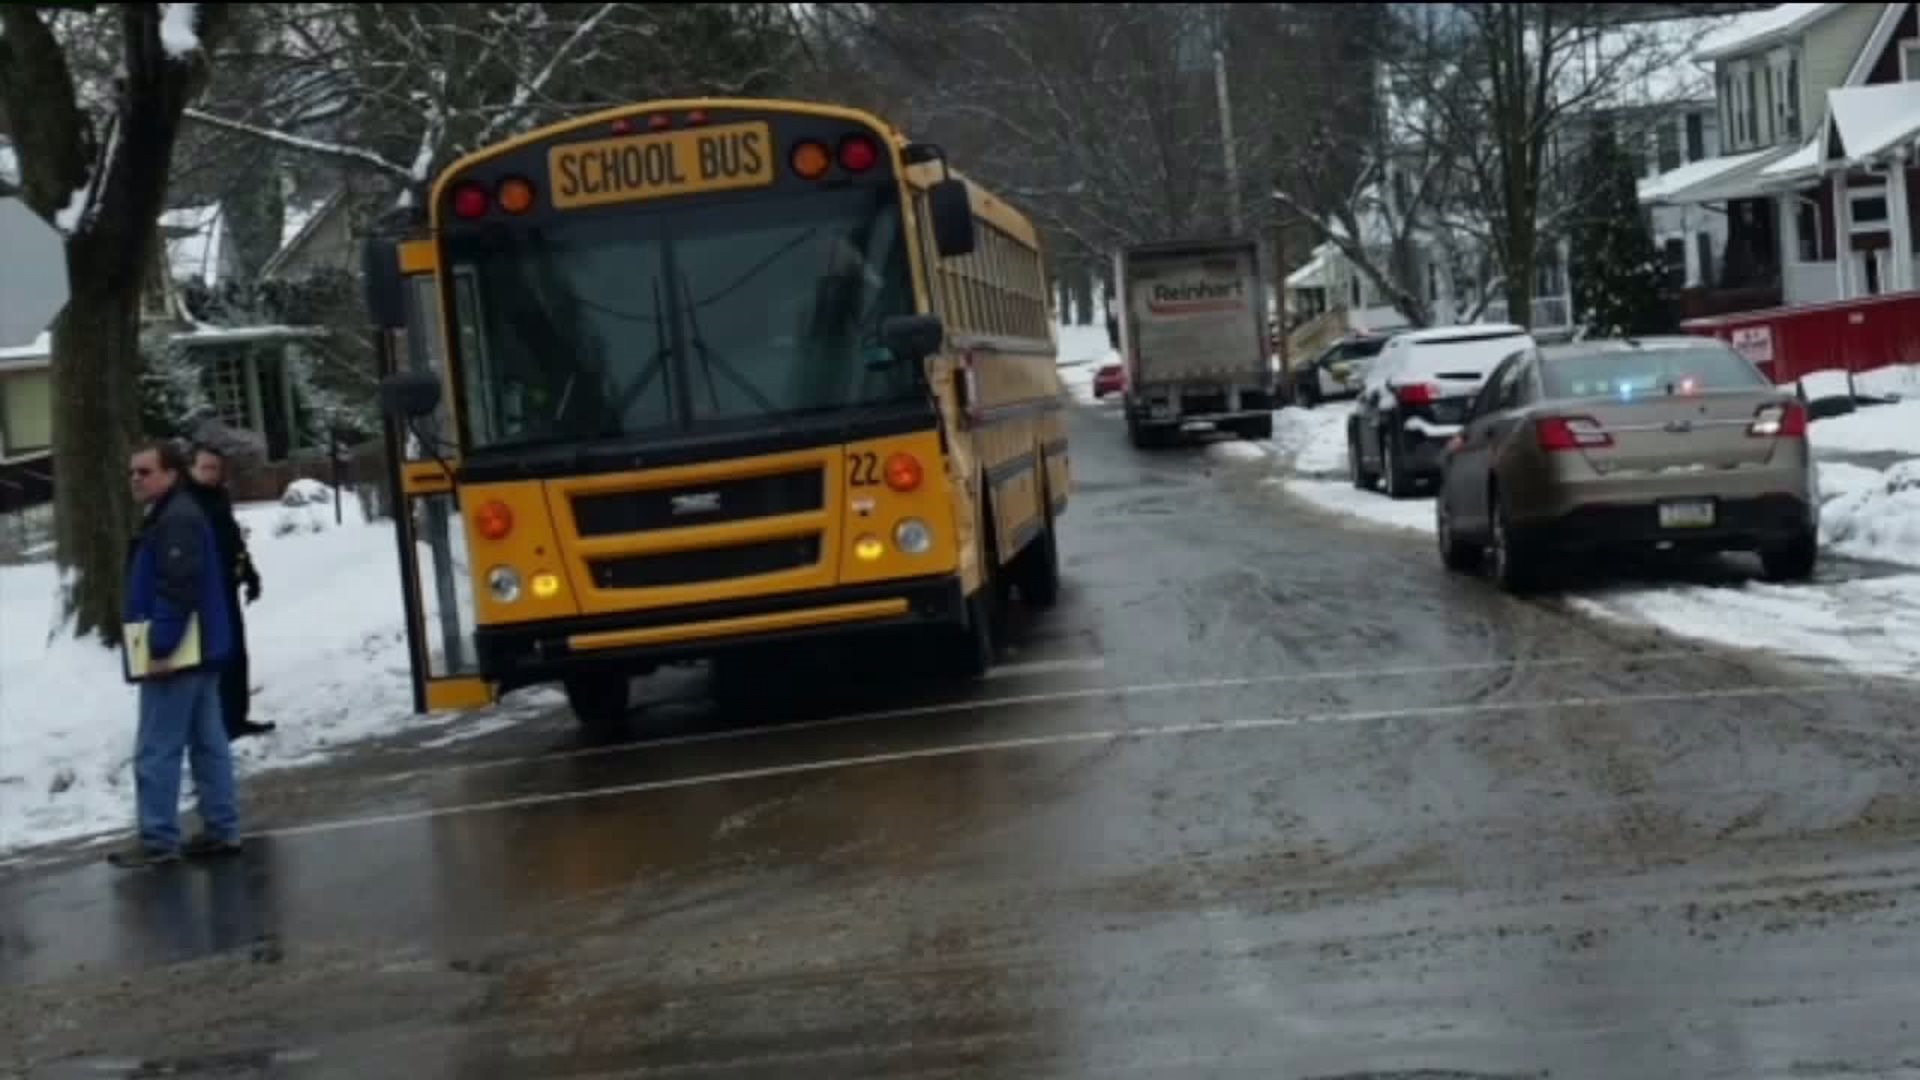 School Bus, Truck Collide in Williamsport